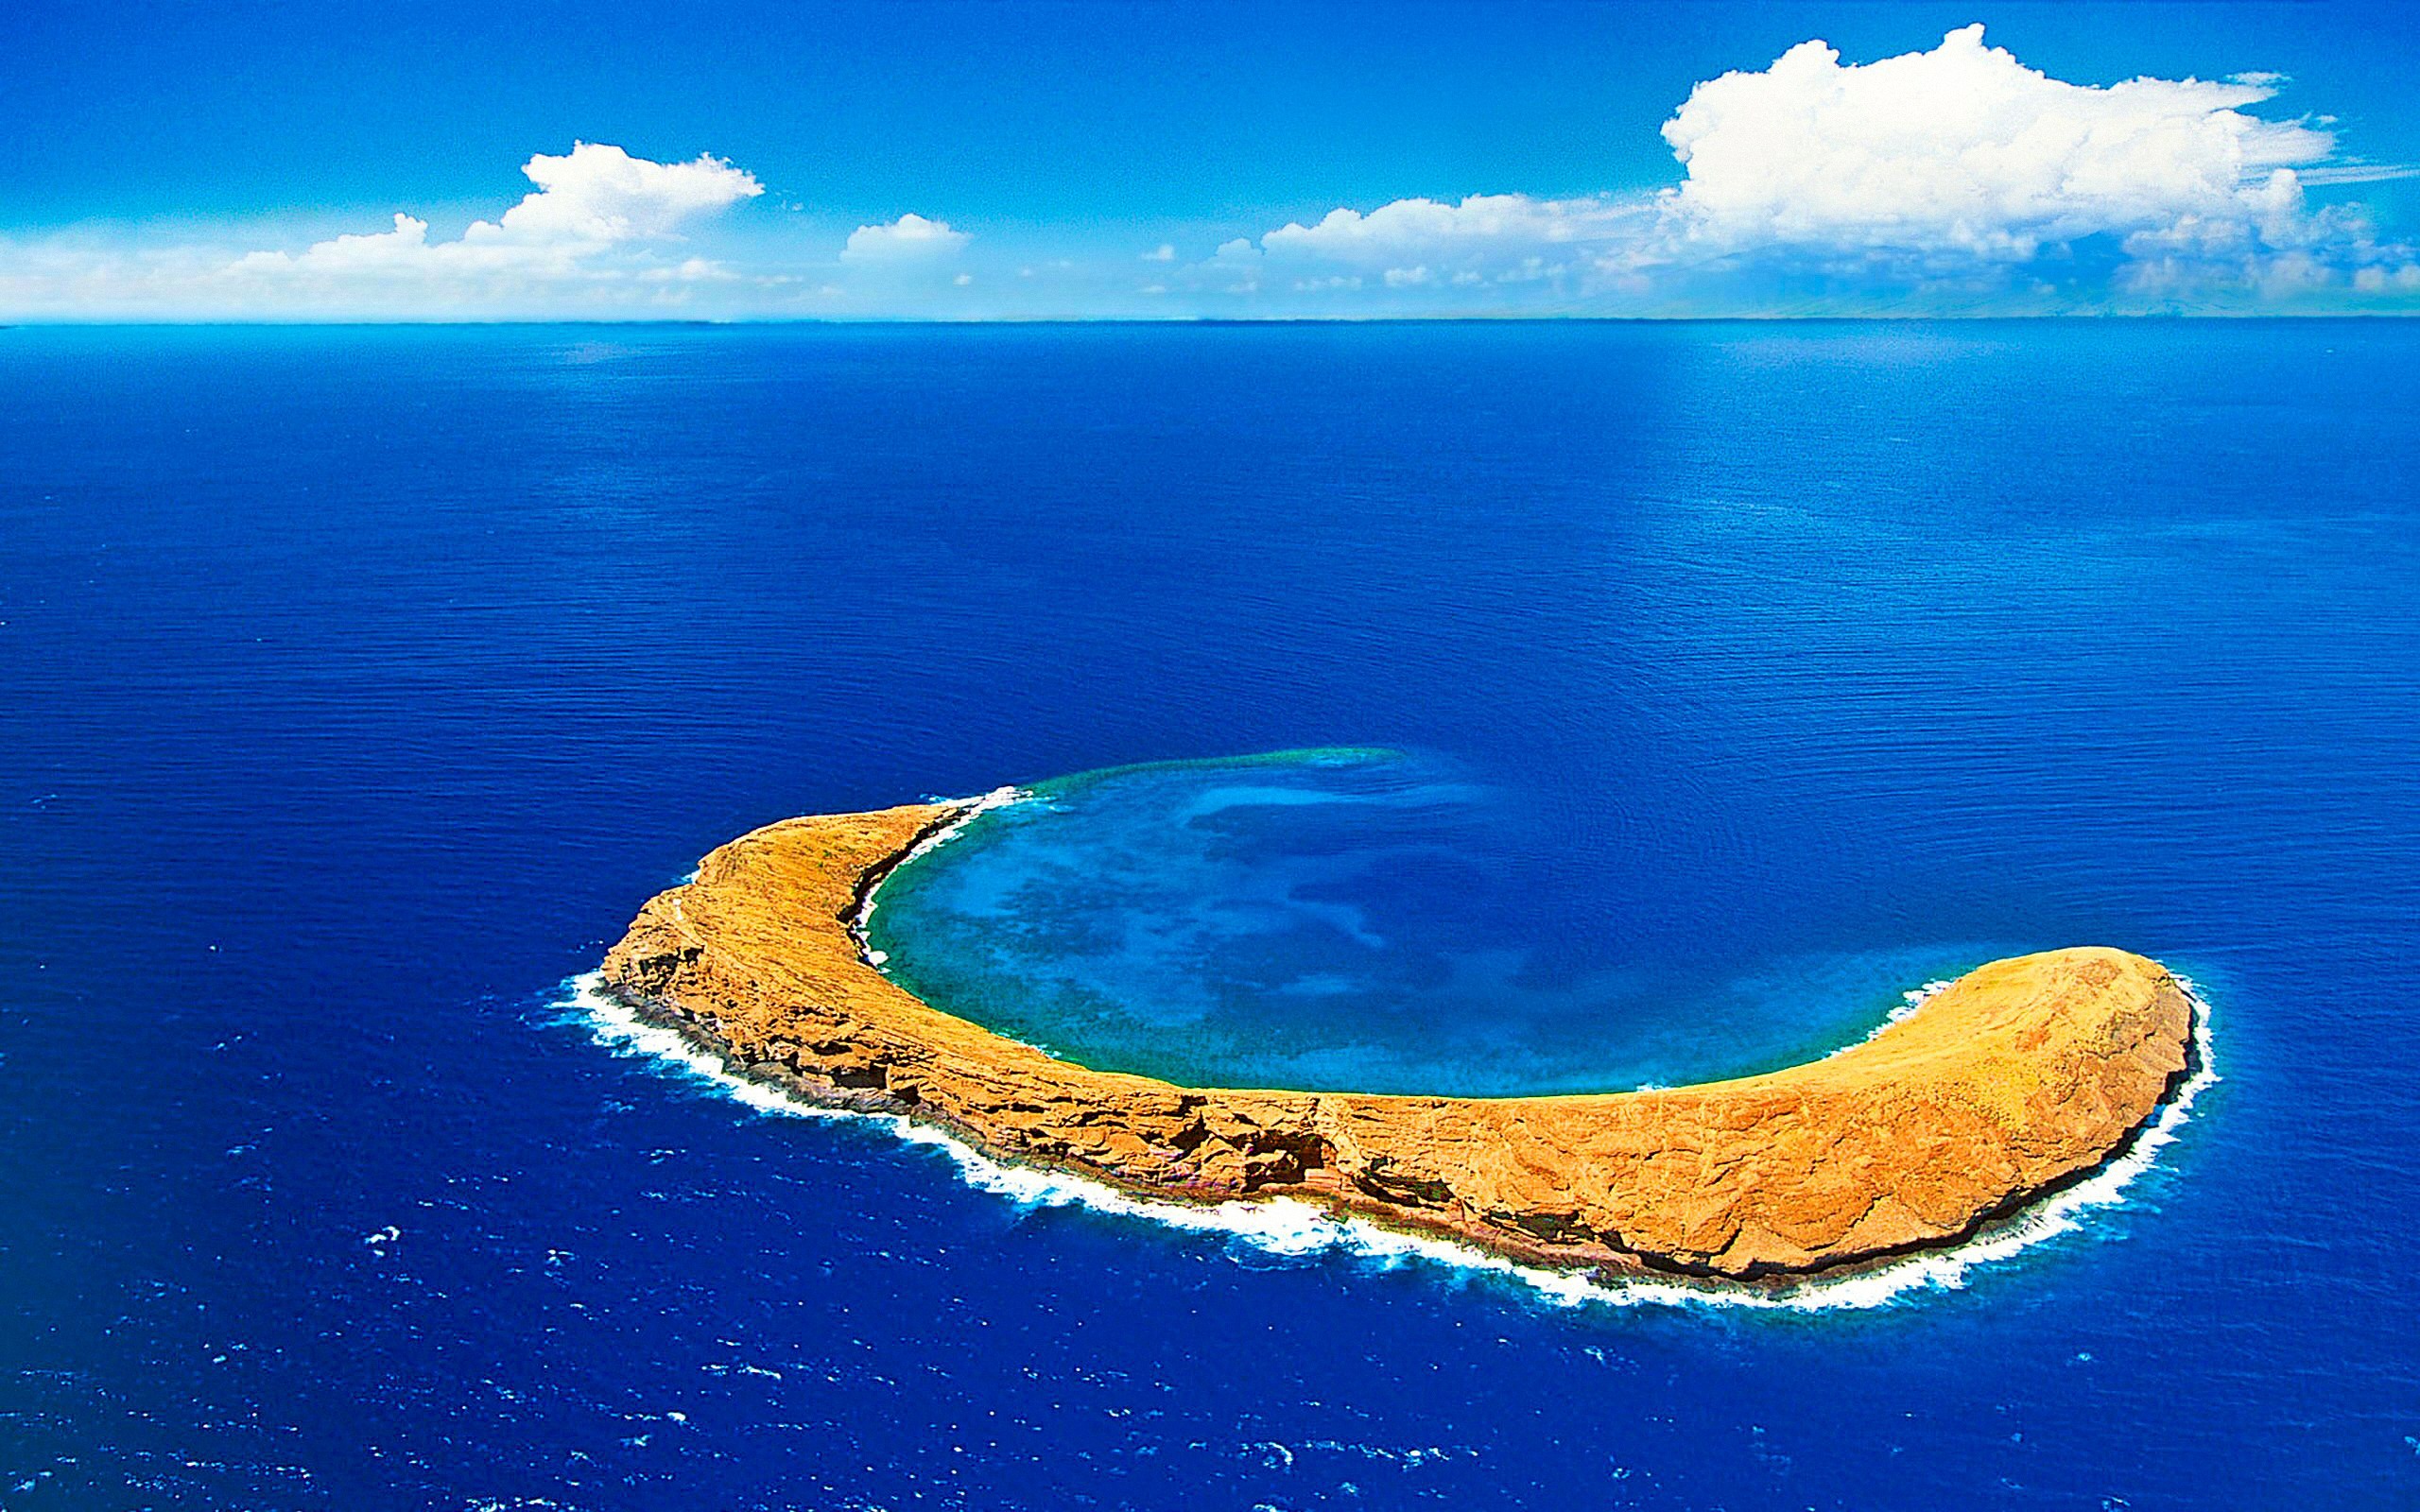 Сами больше море в мире. Молокини Гавайи. Кратер Молокини, Гавайи. Атолл Молокини, Гавайи. Атолл Рокас Бразилия.